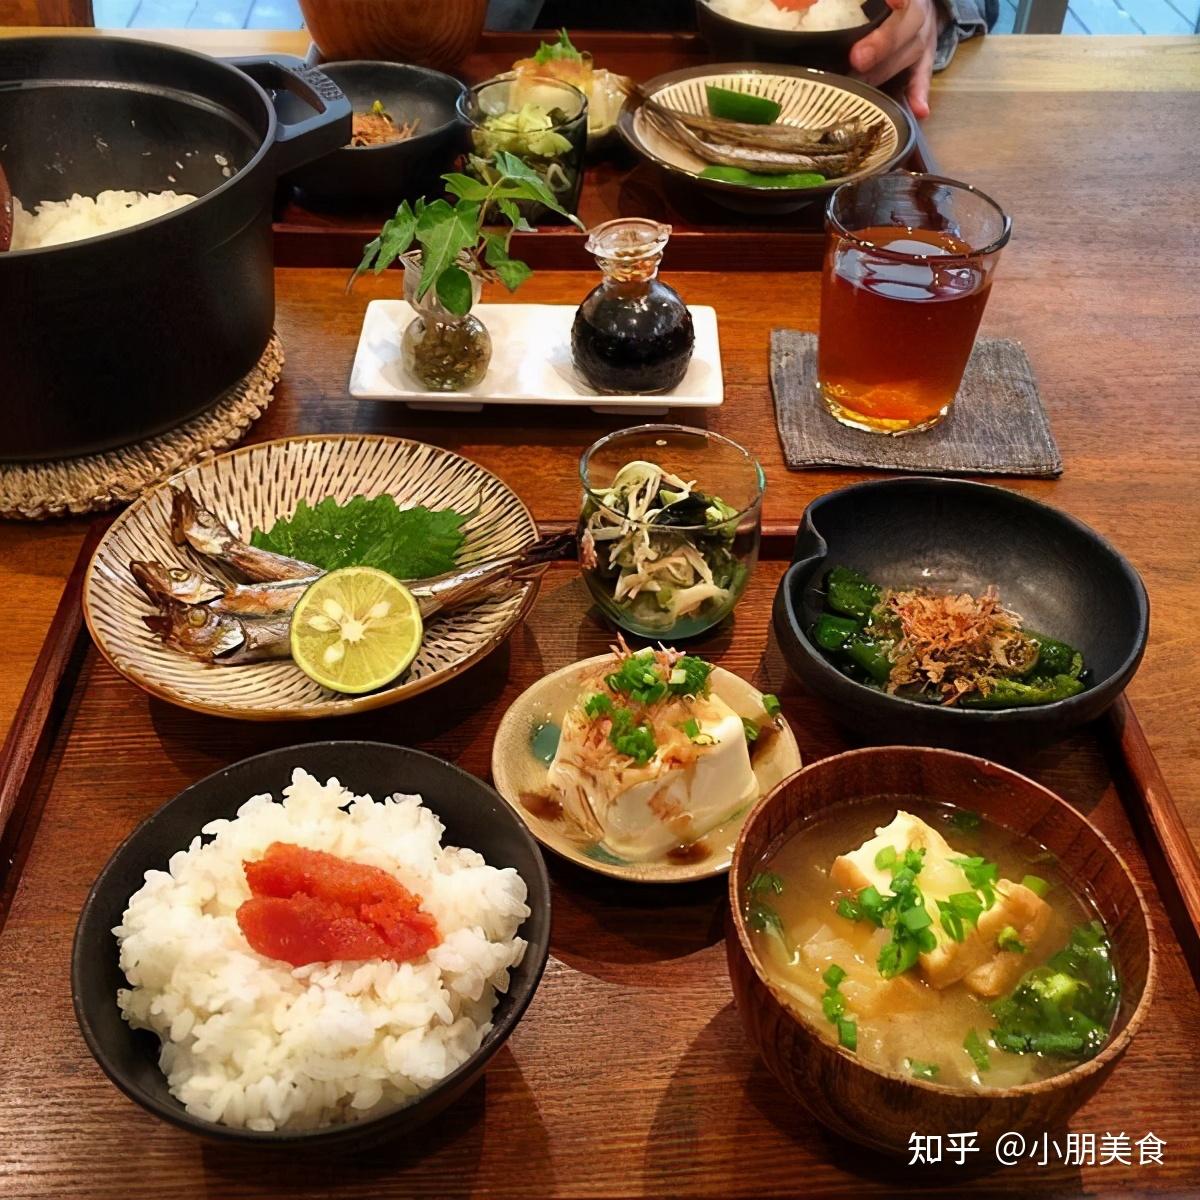 12 Comidas típicas do Japão - Nomes, comidas tradicionais, imagens